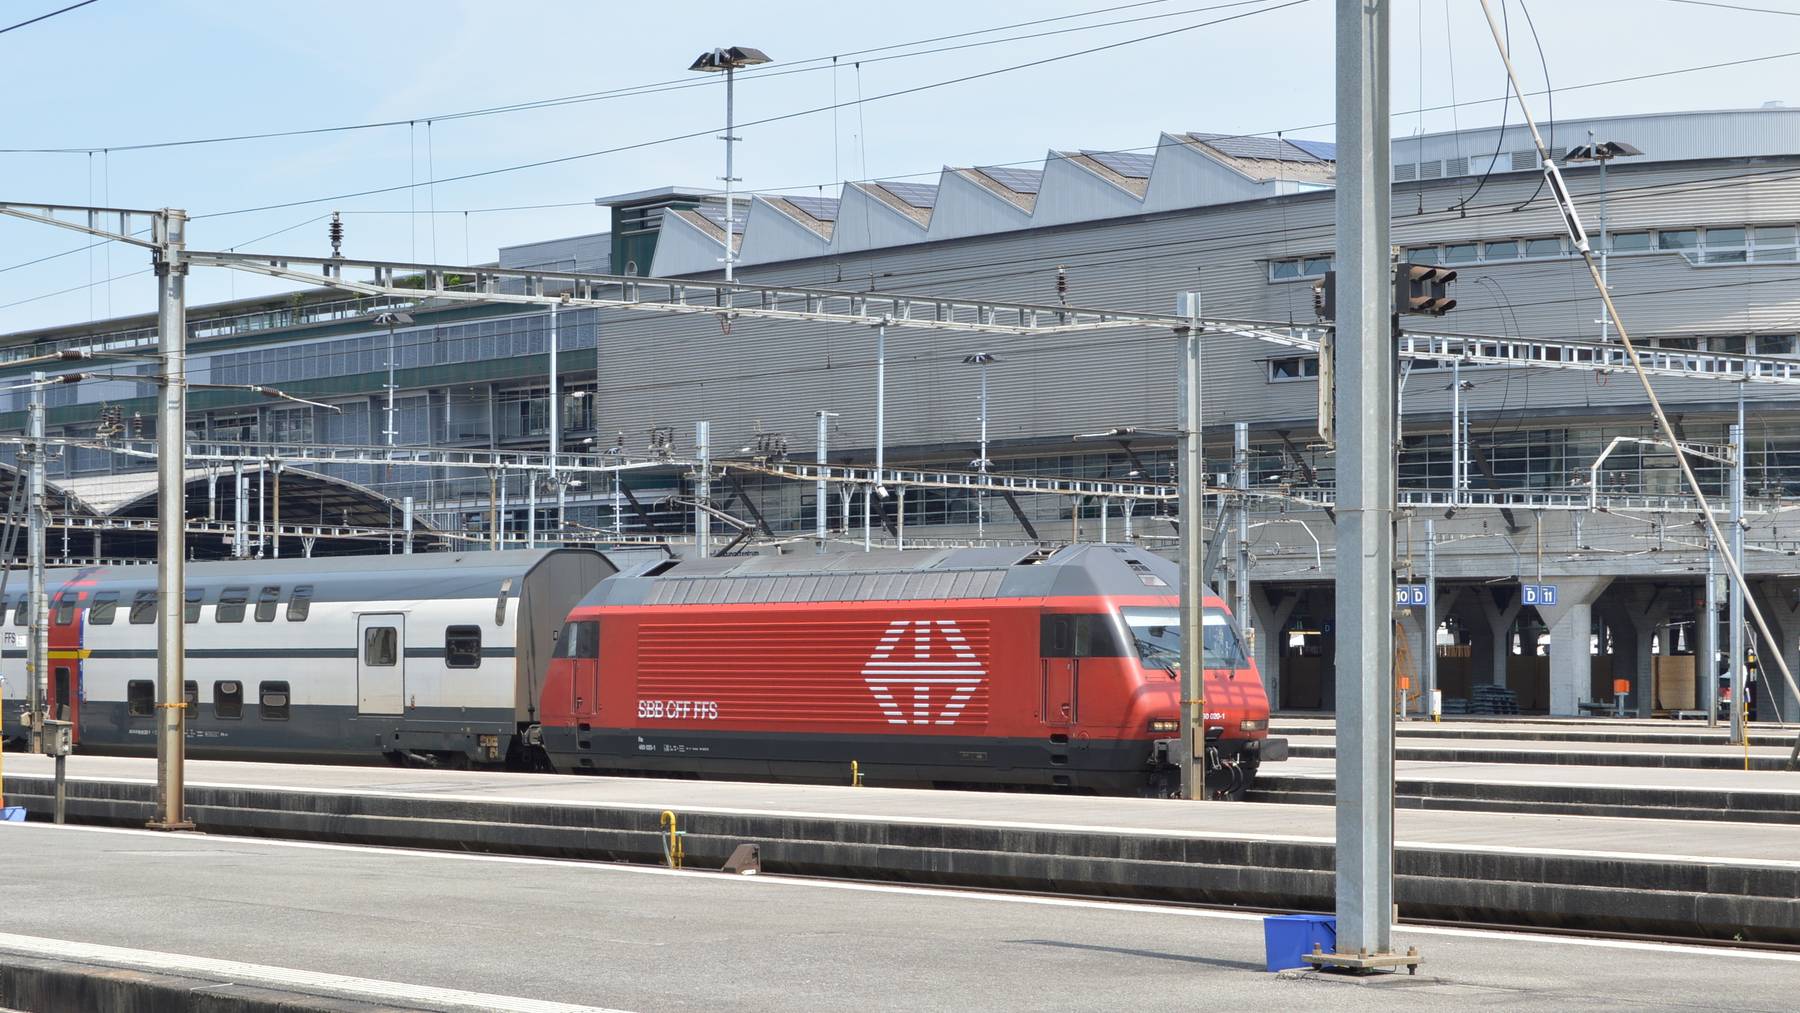 250 Zug-Reisende steckten am Bahnhof Luzern fest